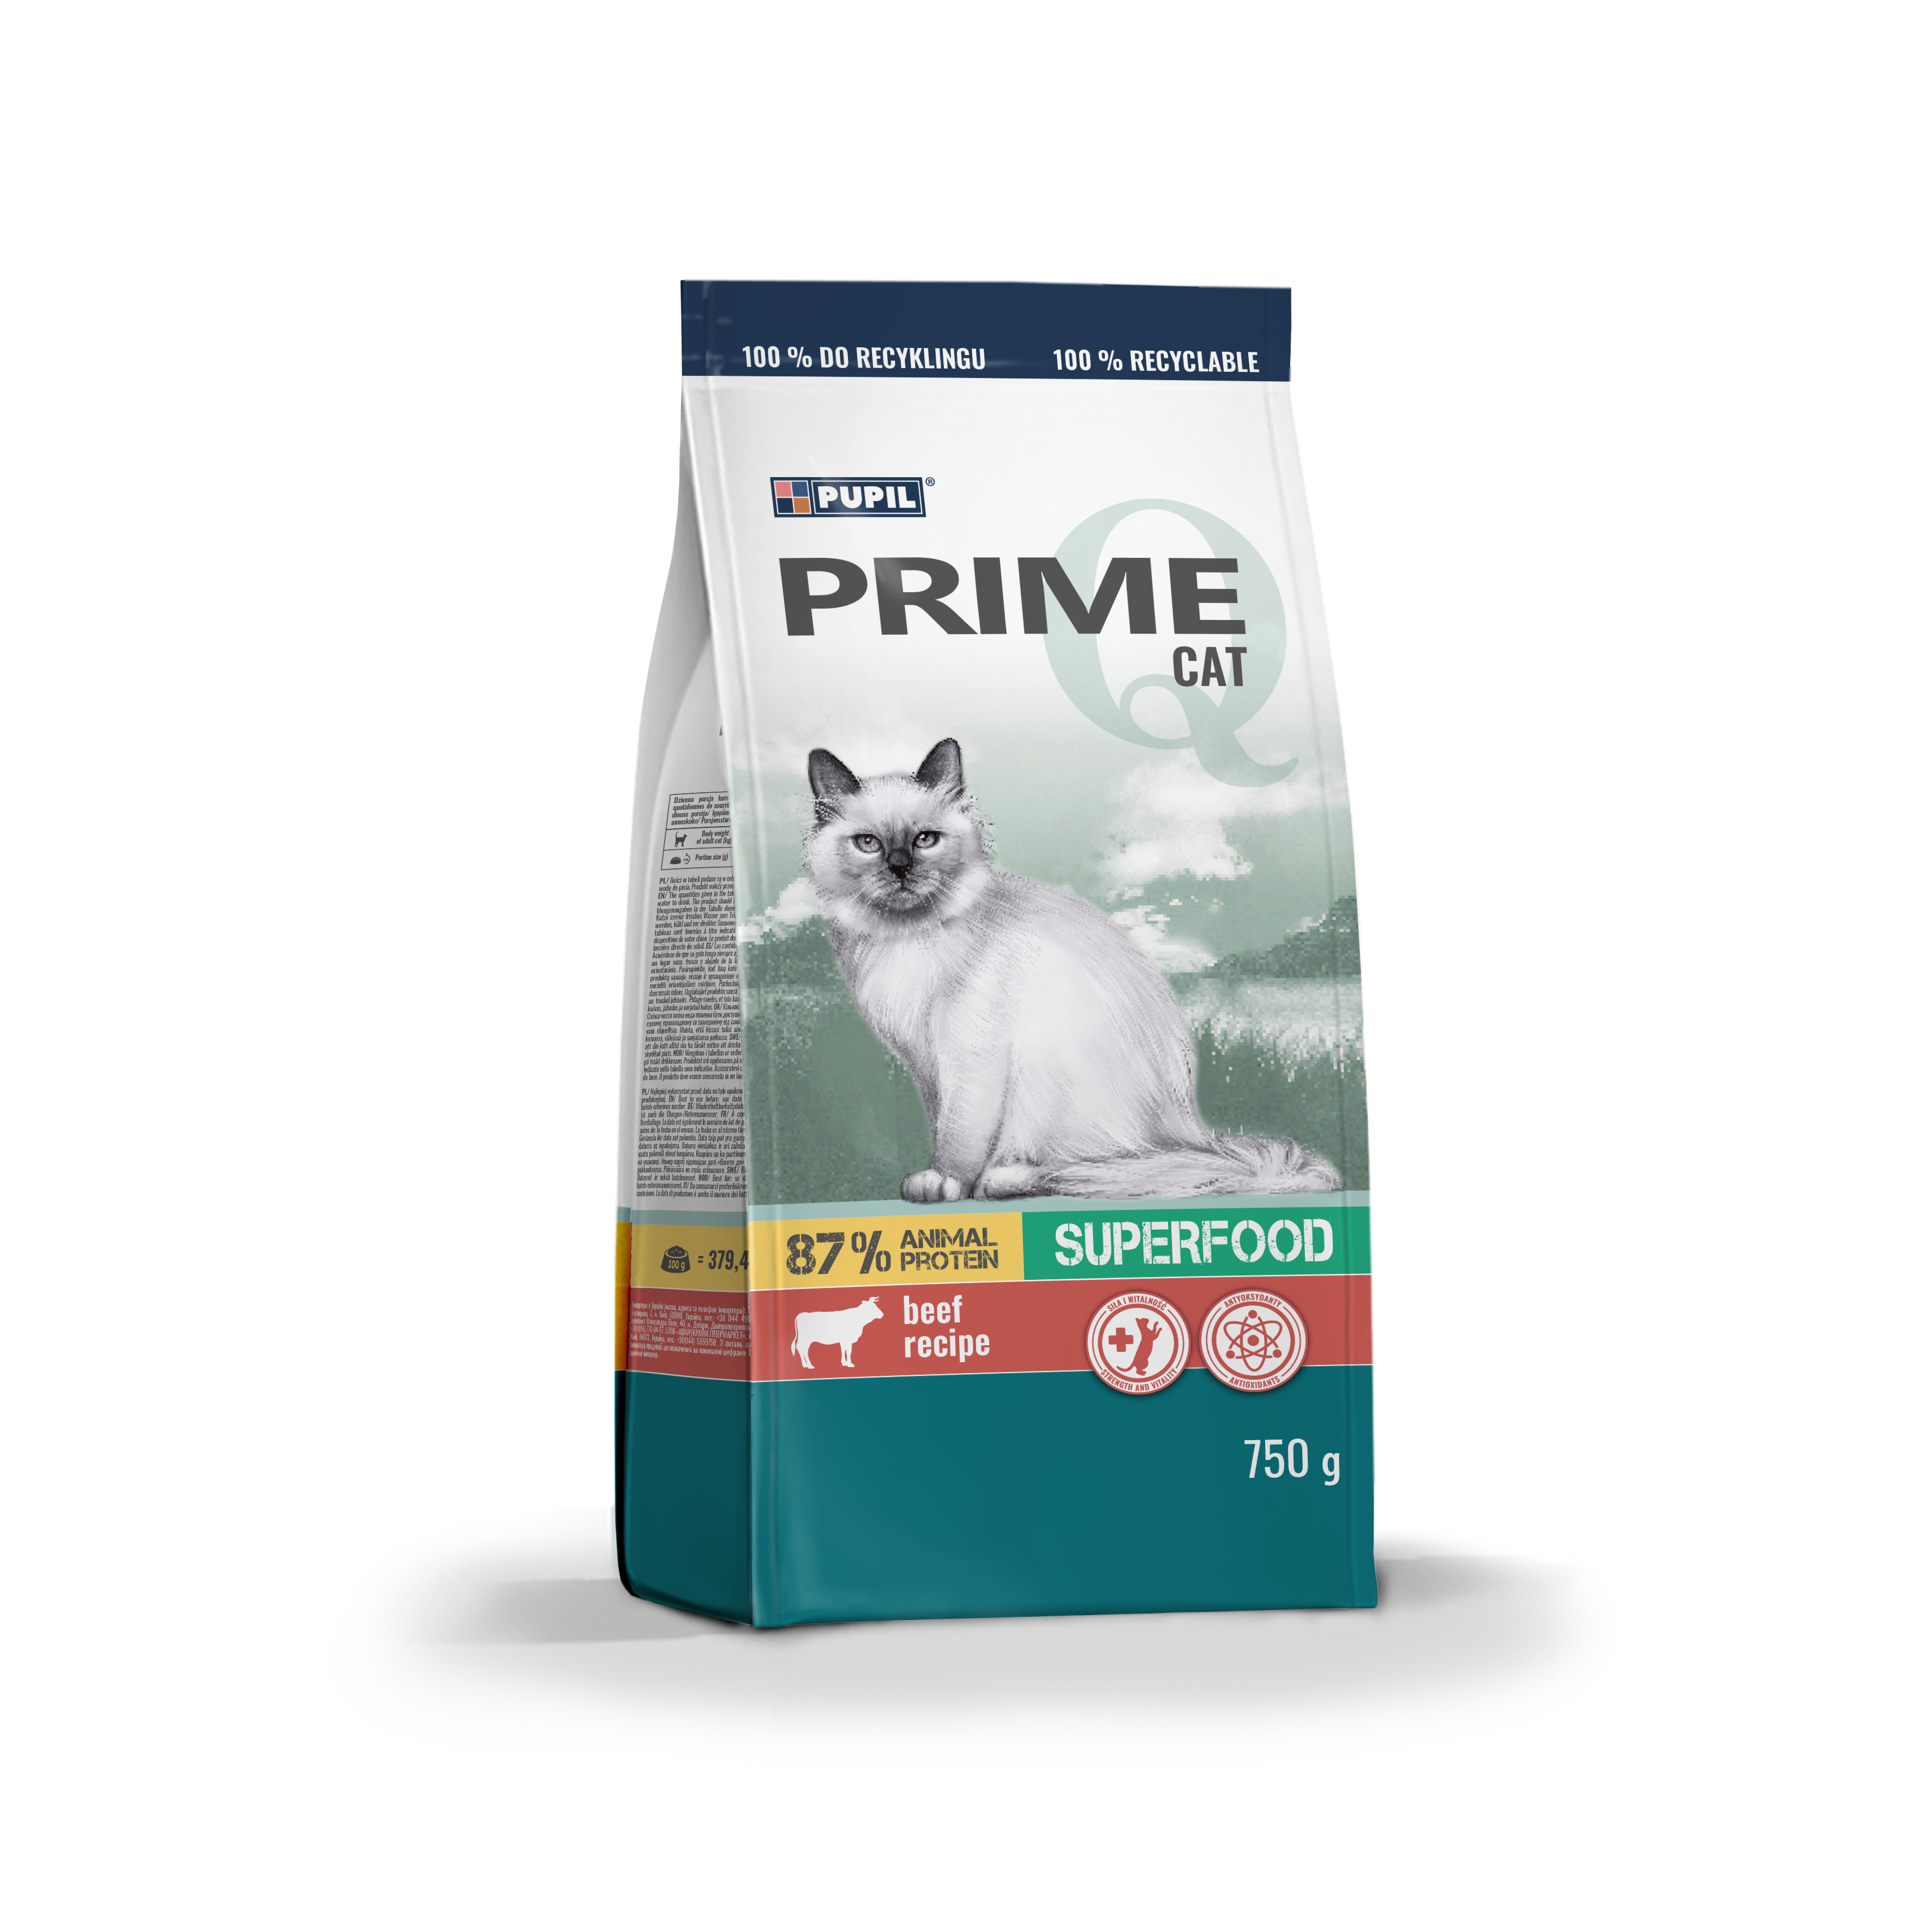 Pisici - Prime Hr Uscata cu Vita/Legume pt pisici 750g, https:shop.interpet.ro